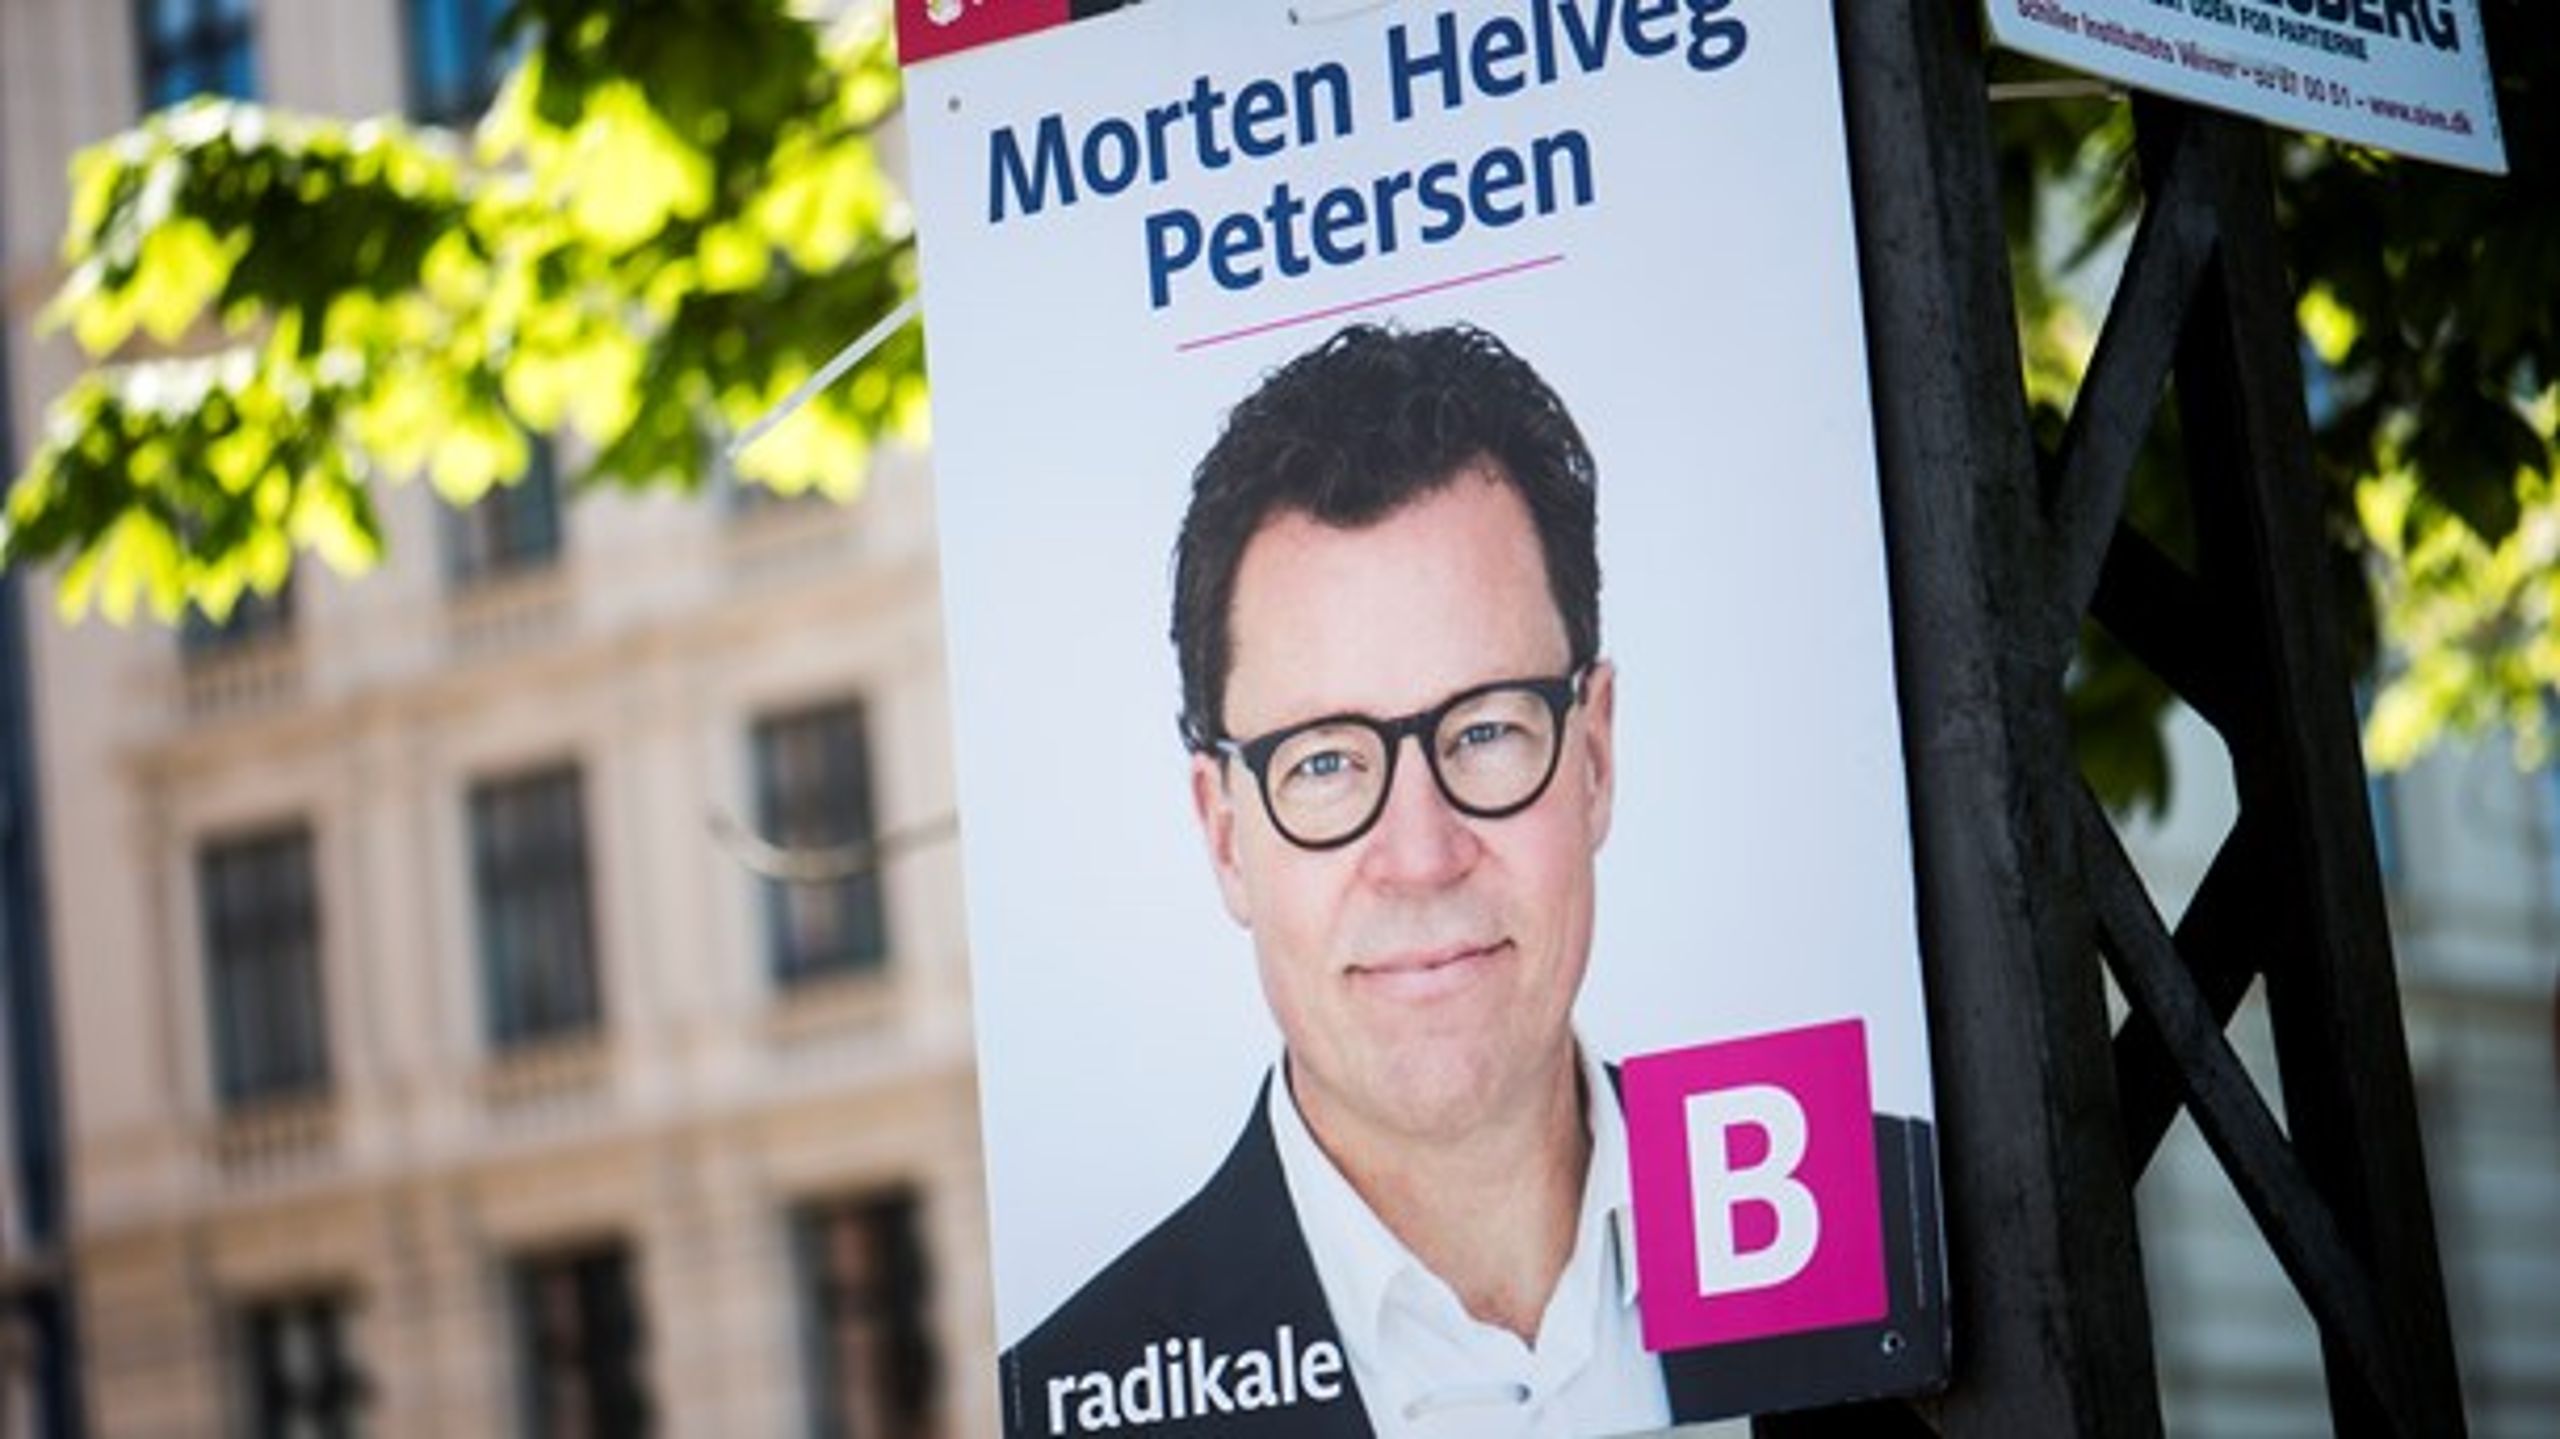 Med én dag til EP-valget er det ved at være sidste chance for at stille spørgsmål til Radikales spidskandidat Morten Helveg Petersen.